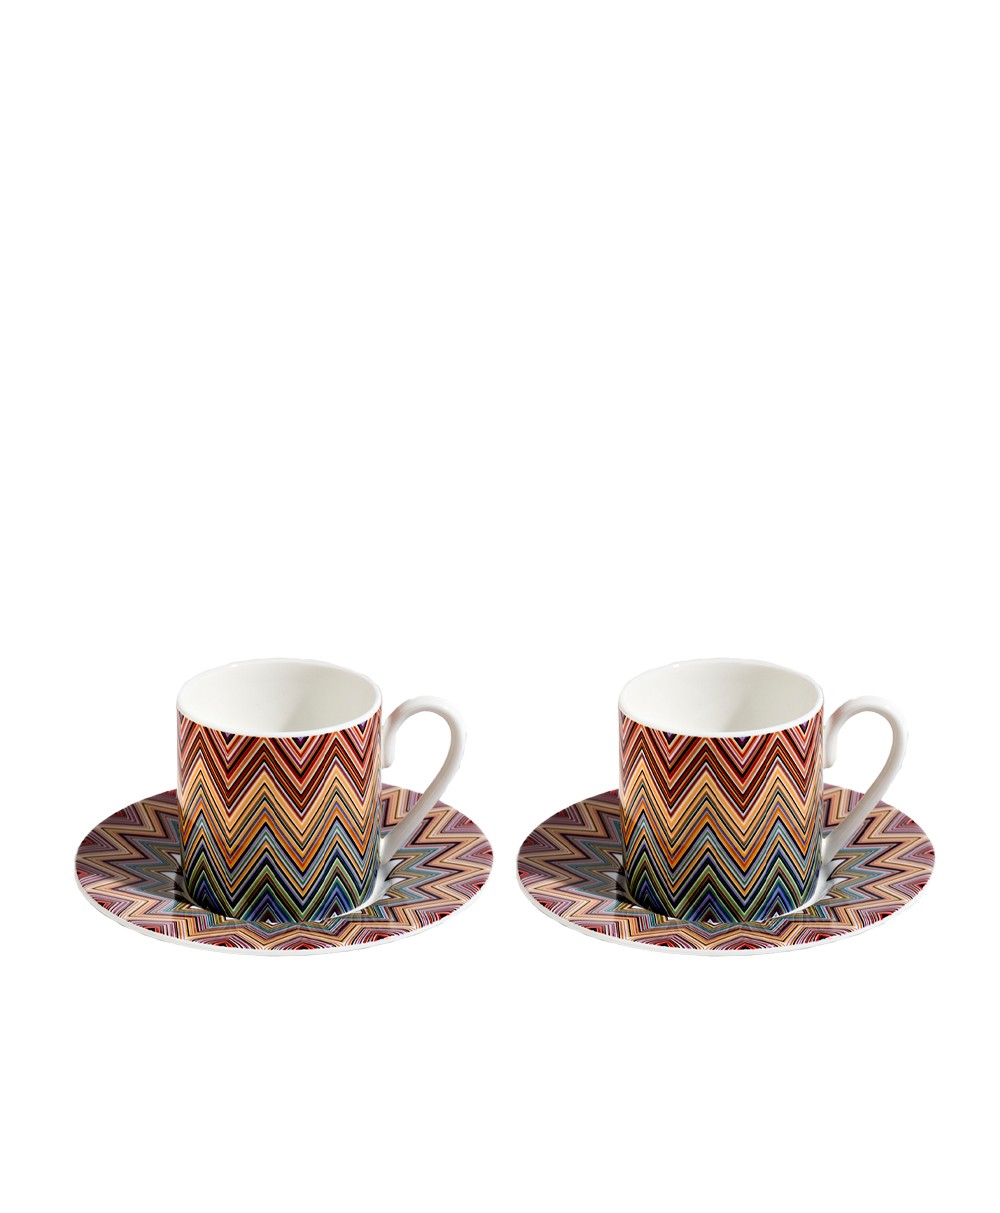 Produktbild der Kaffee Tasse Zig Zag in der Farbe Jarris 156 von Missoni - RAUM concept store